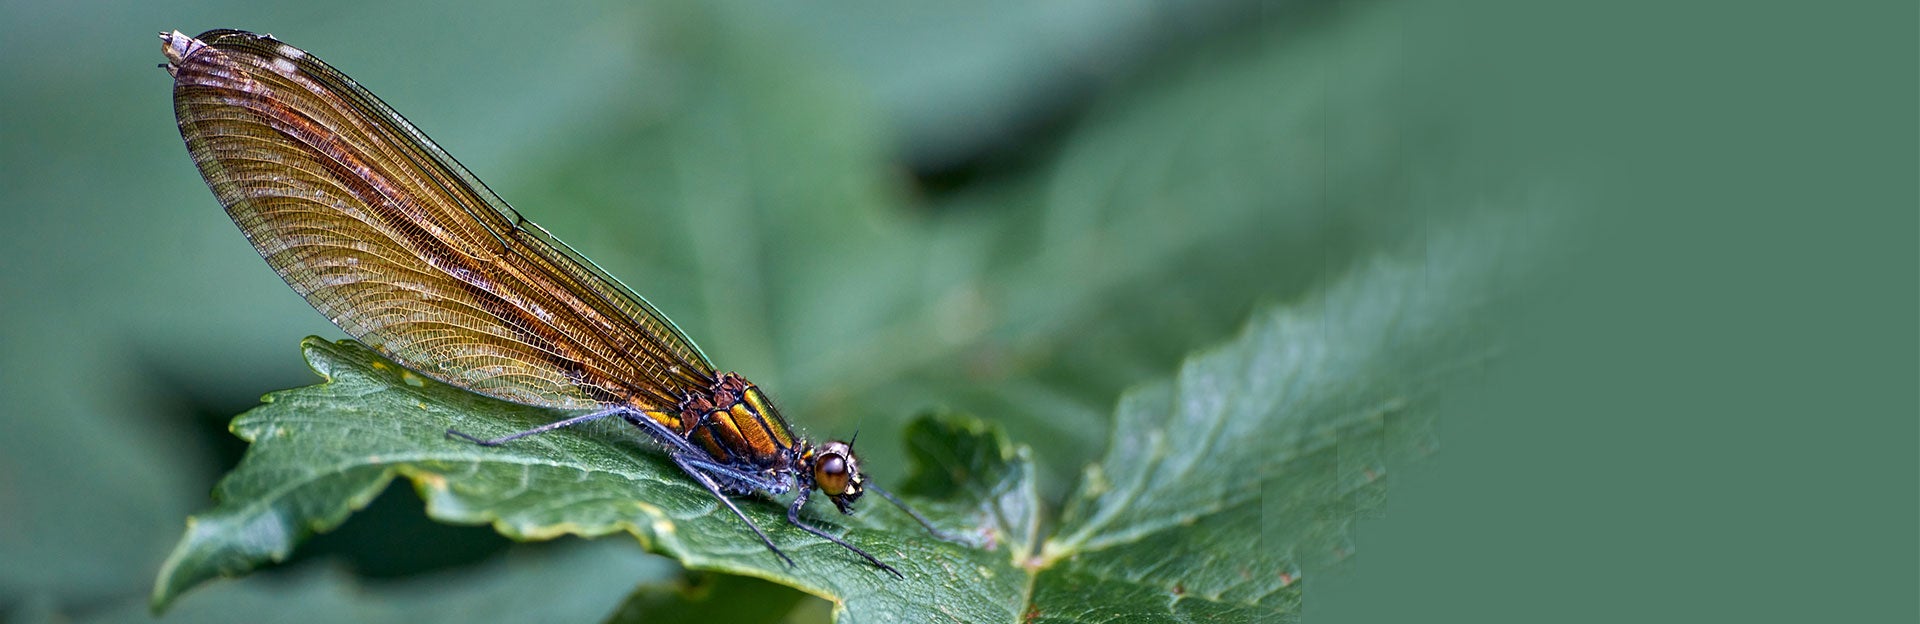 dragonfly on a leaf (c) Wolfgang Hasselmann